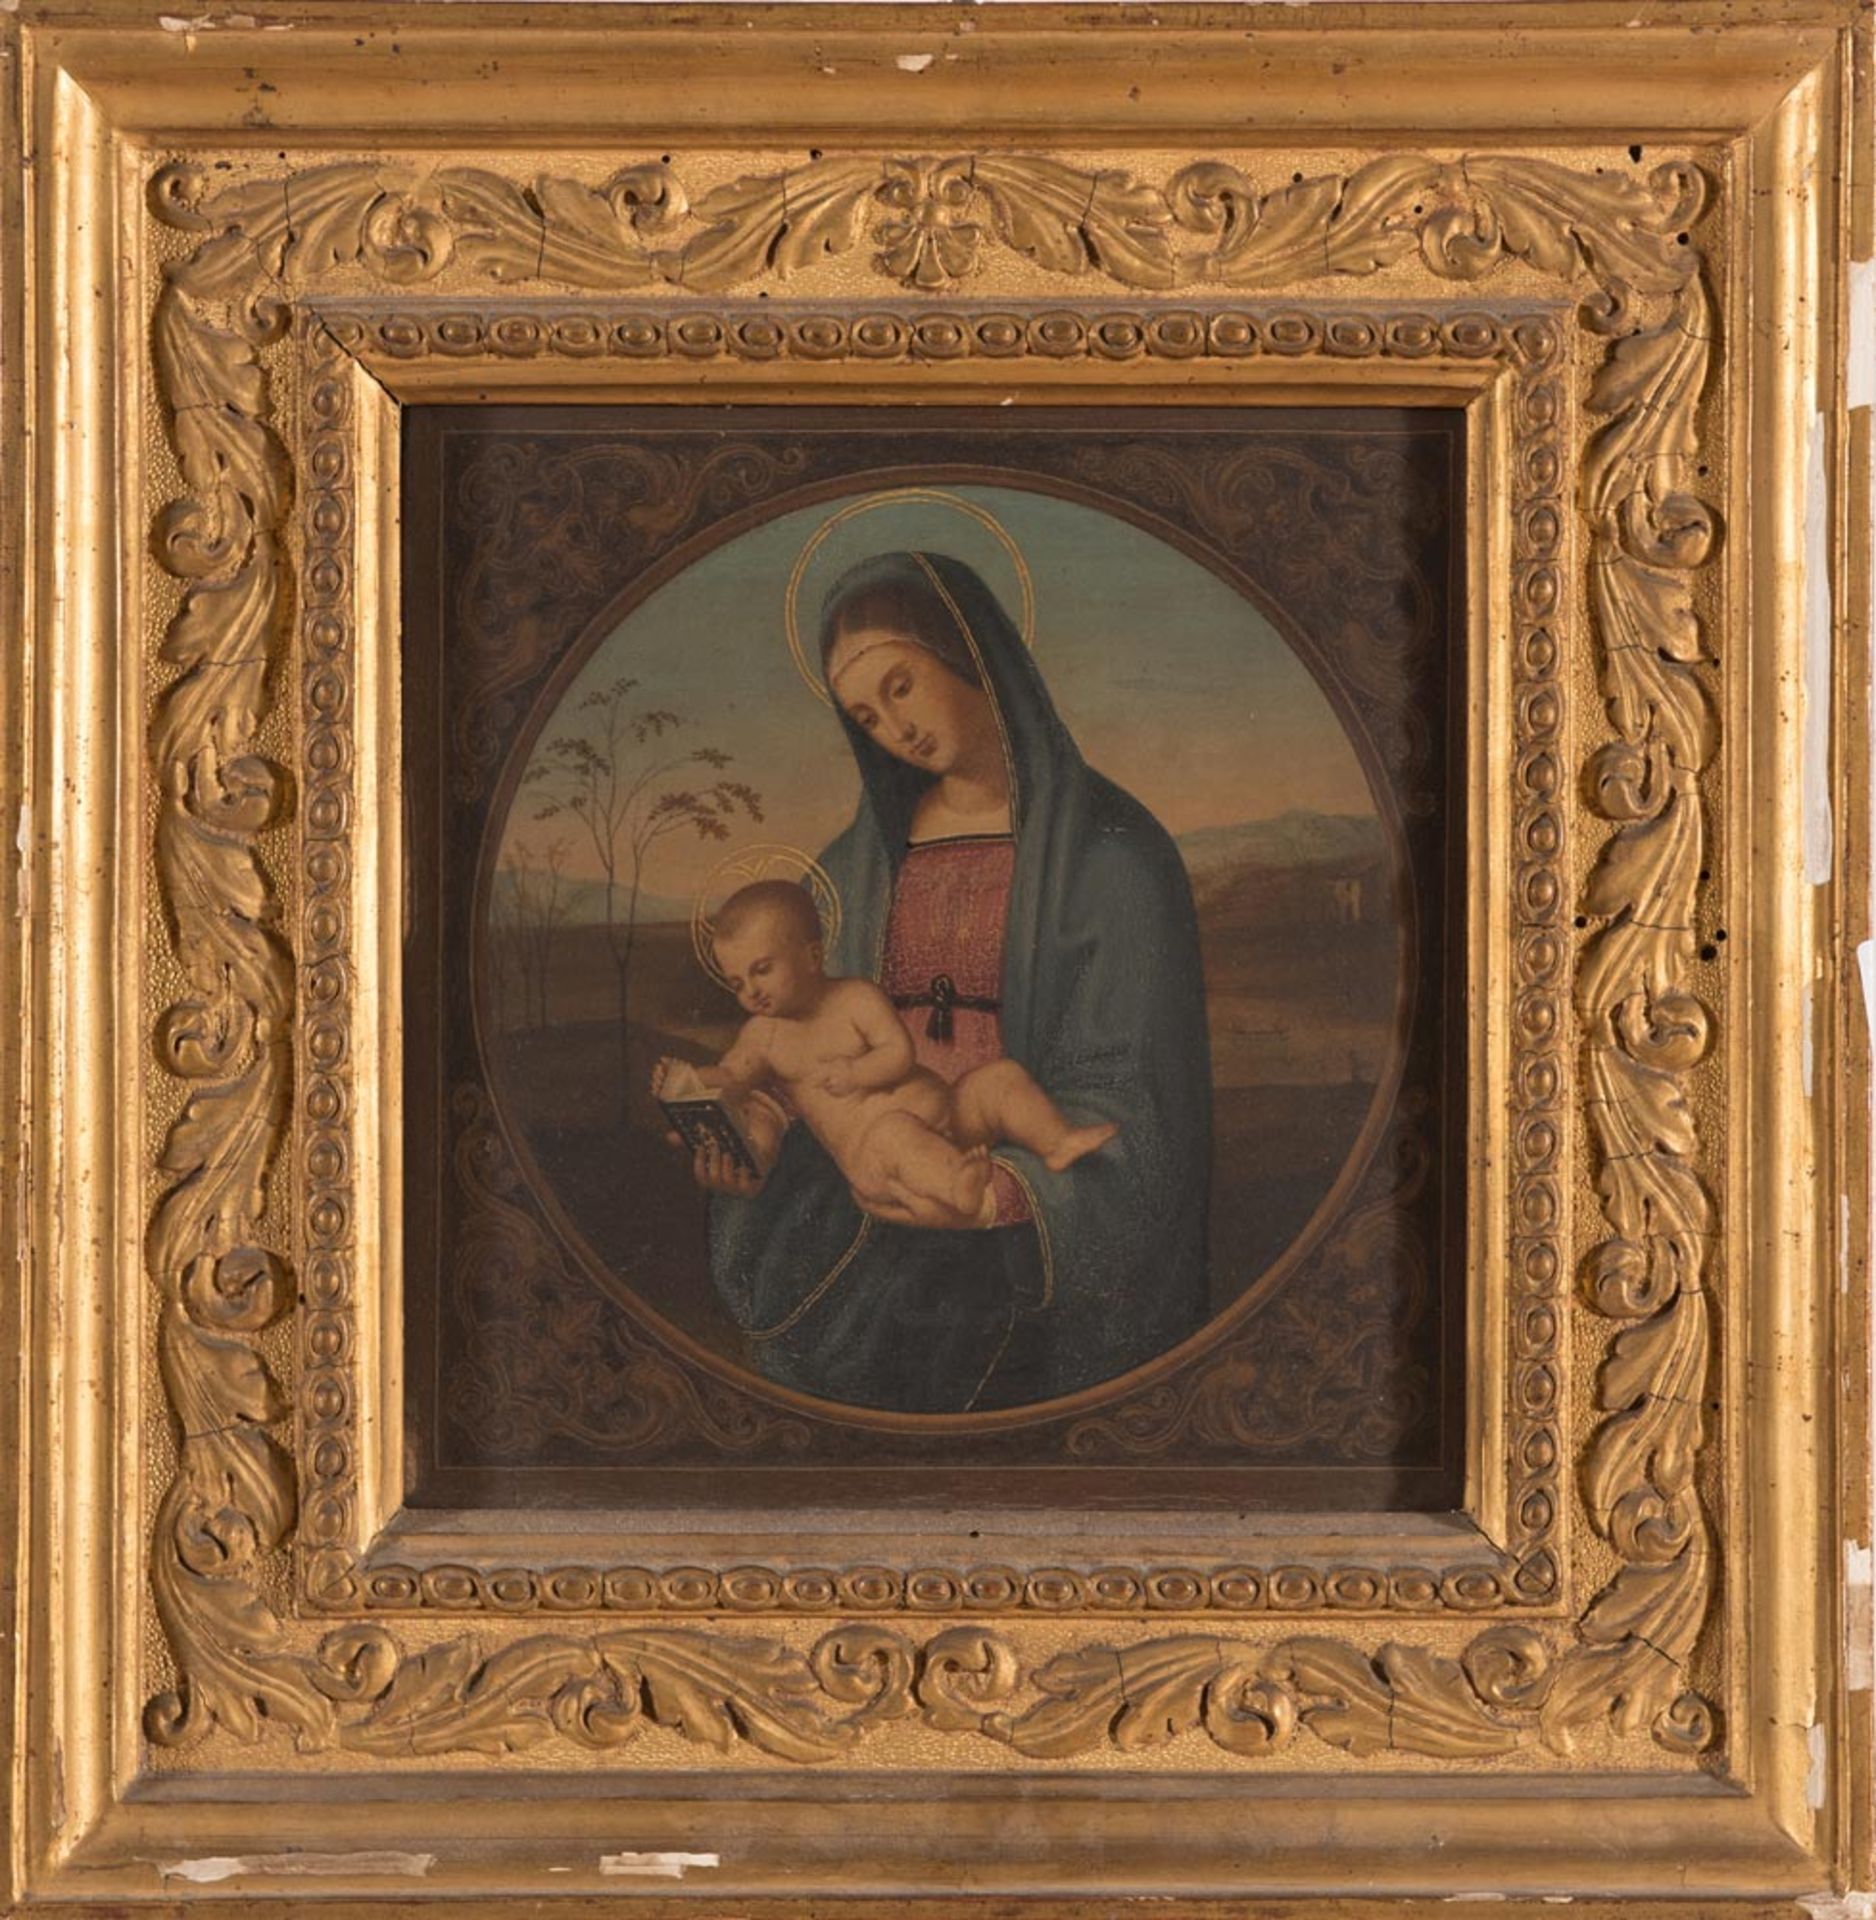 After Raffaello Sanzio, "Madonna del Libro".